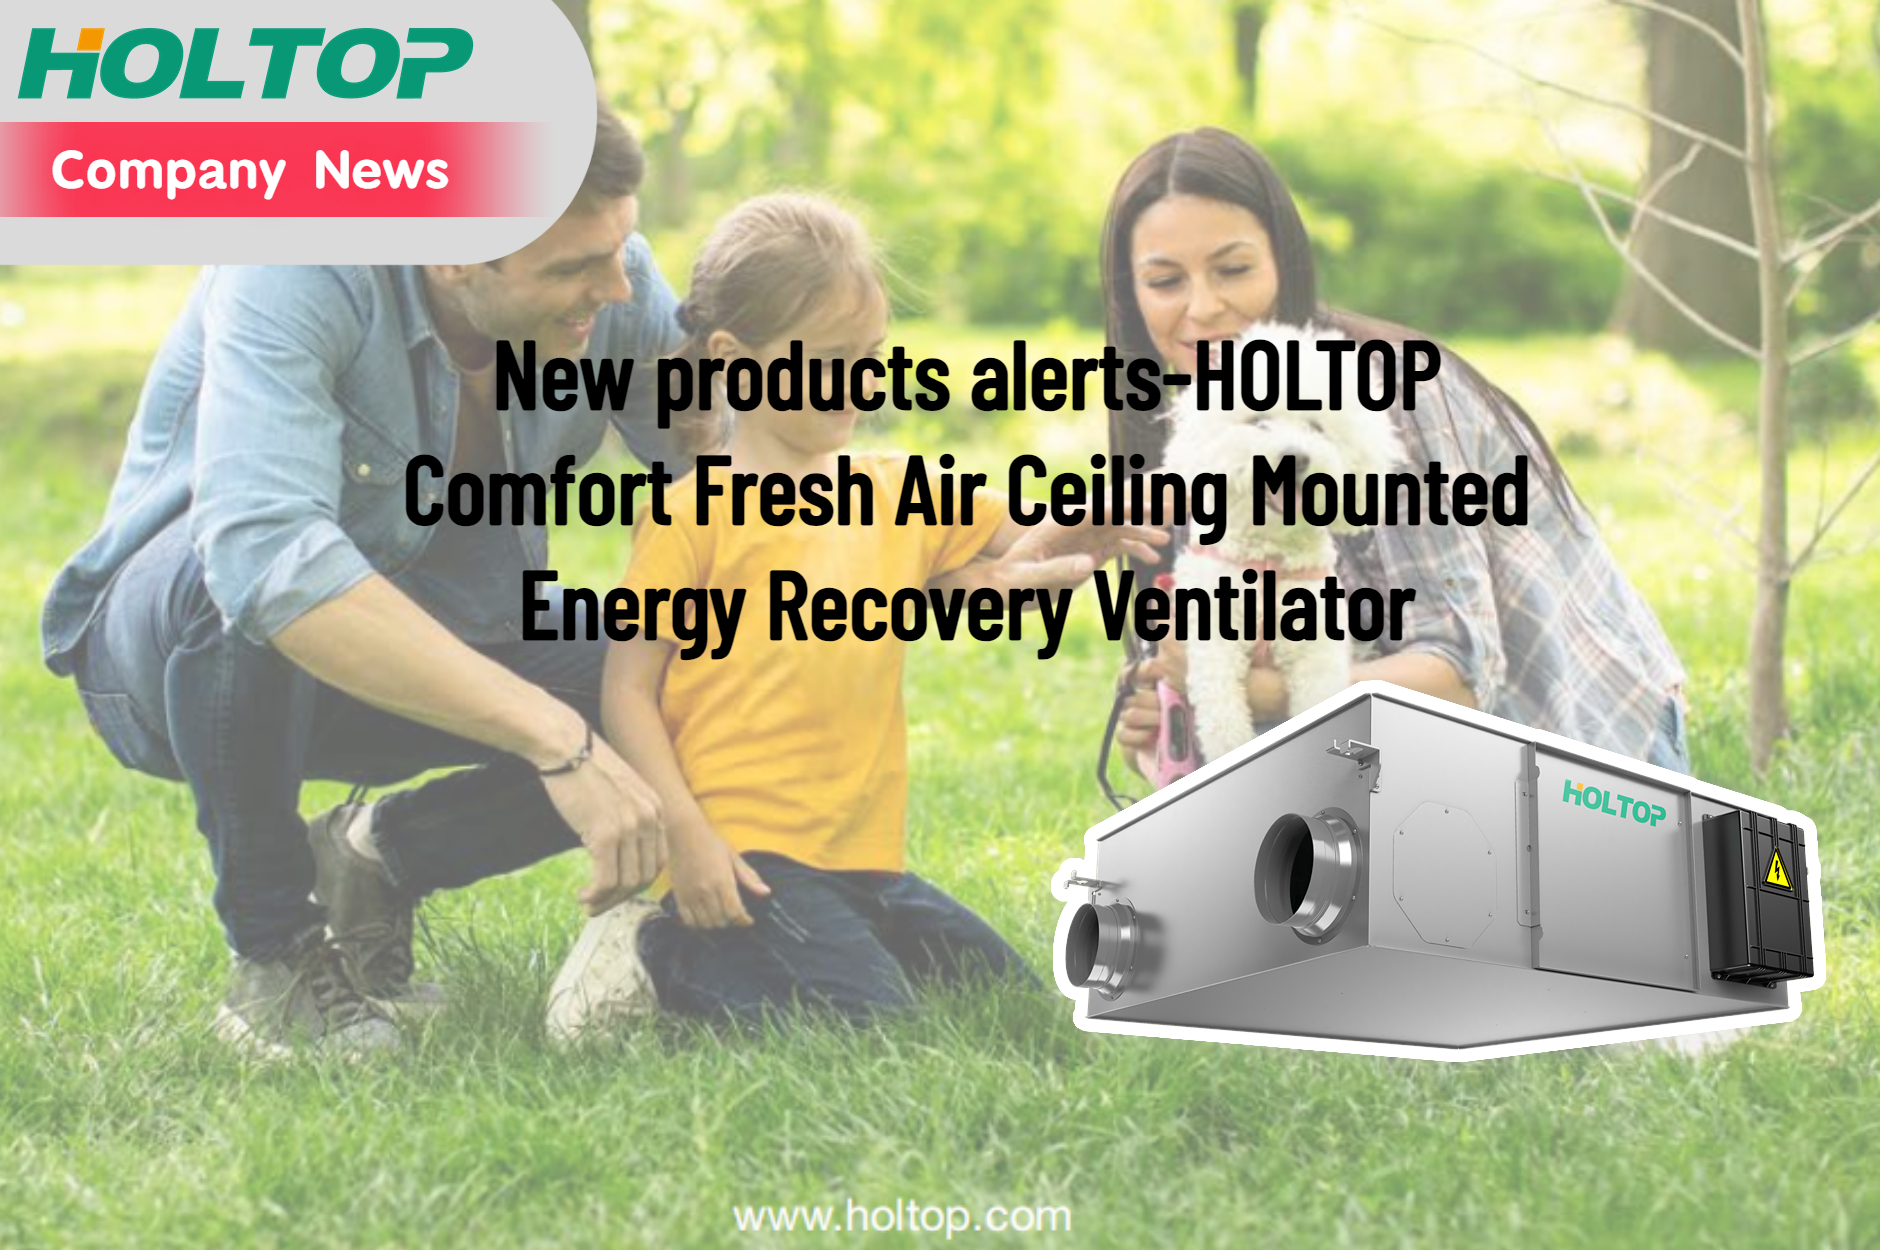 منتجات جديدة تنبيهات- مروحة HOLTOP Comfort Fresh Air المثبتة على السقف لاستعادة الطاقة